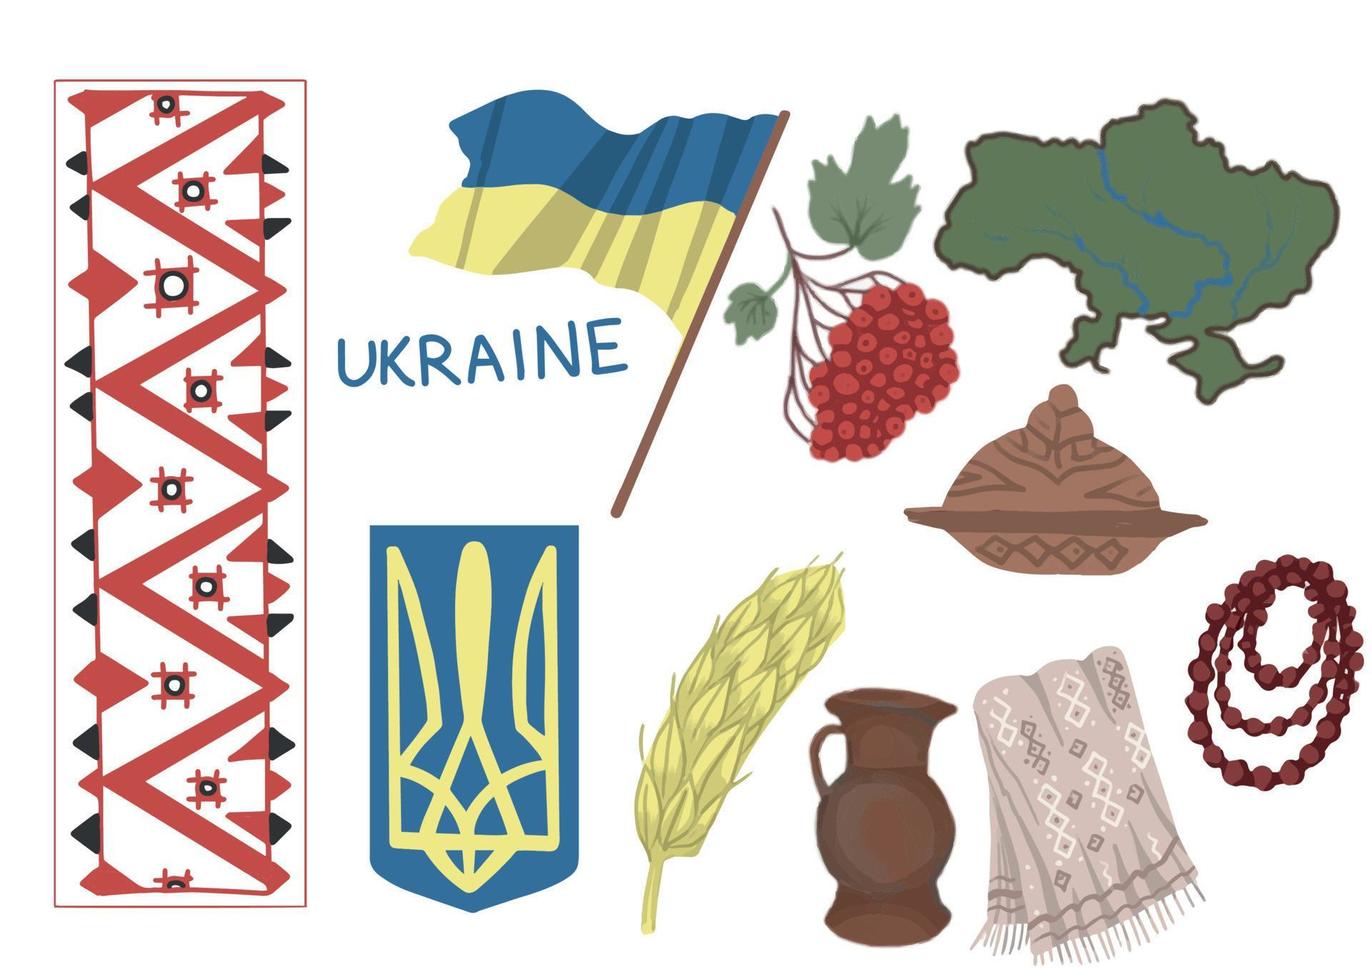 bandeira nacional da ucrânia e brasão de armas, símbolos do mapa do país viburnum, pão de toalha, contas vermelhas separam elementos desenhados à mão separadamente em um fundo branco vetor